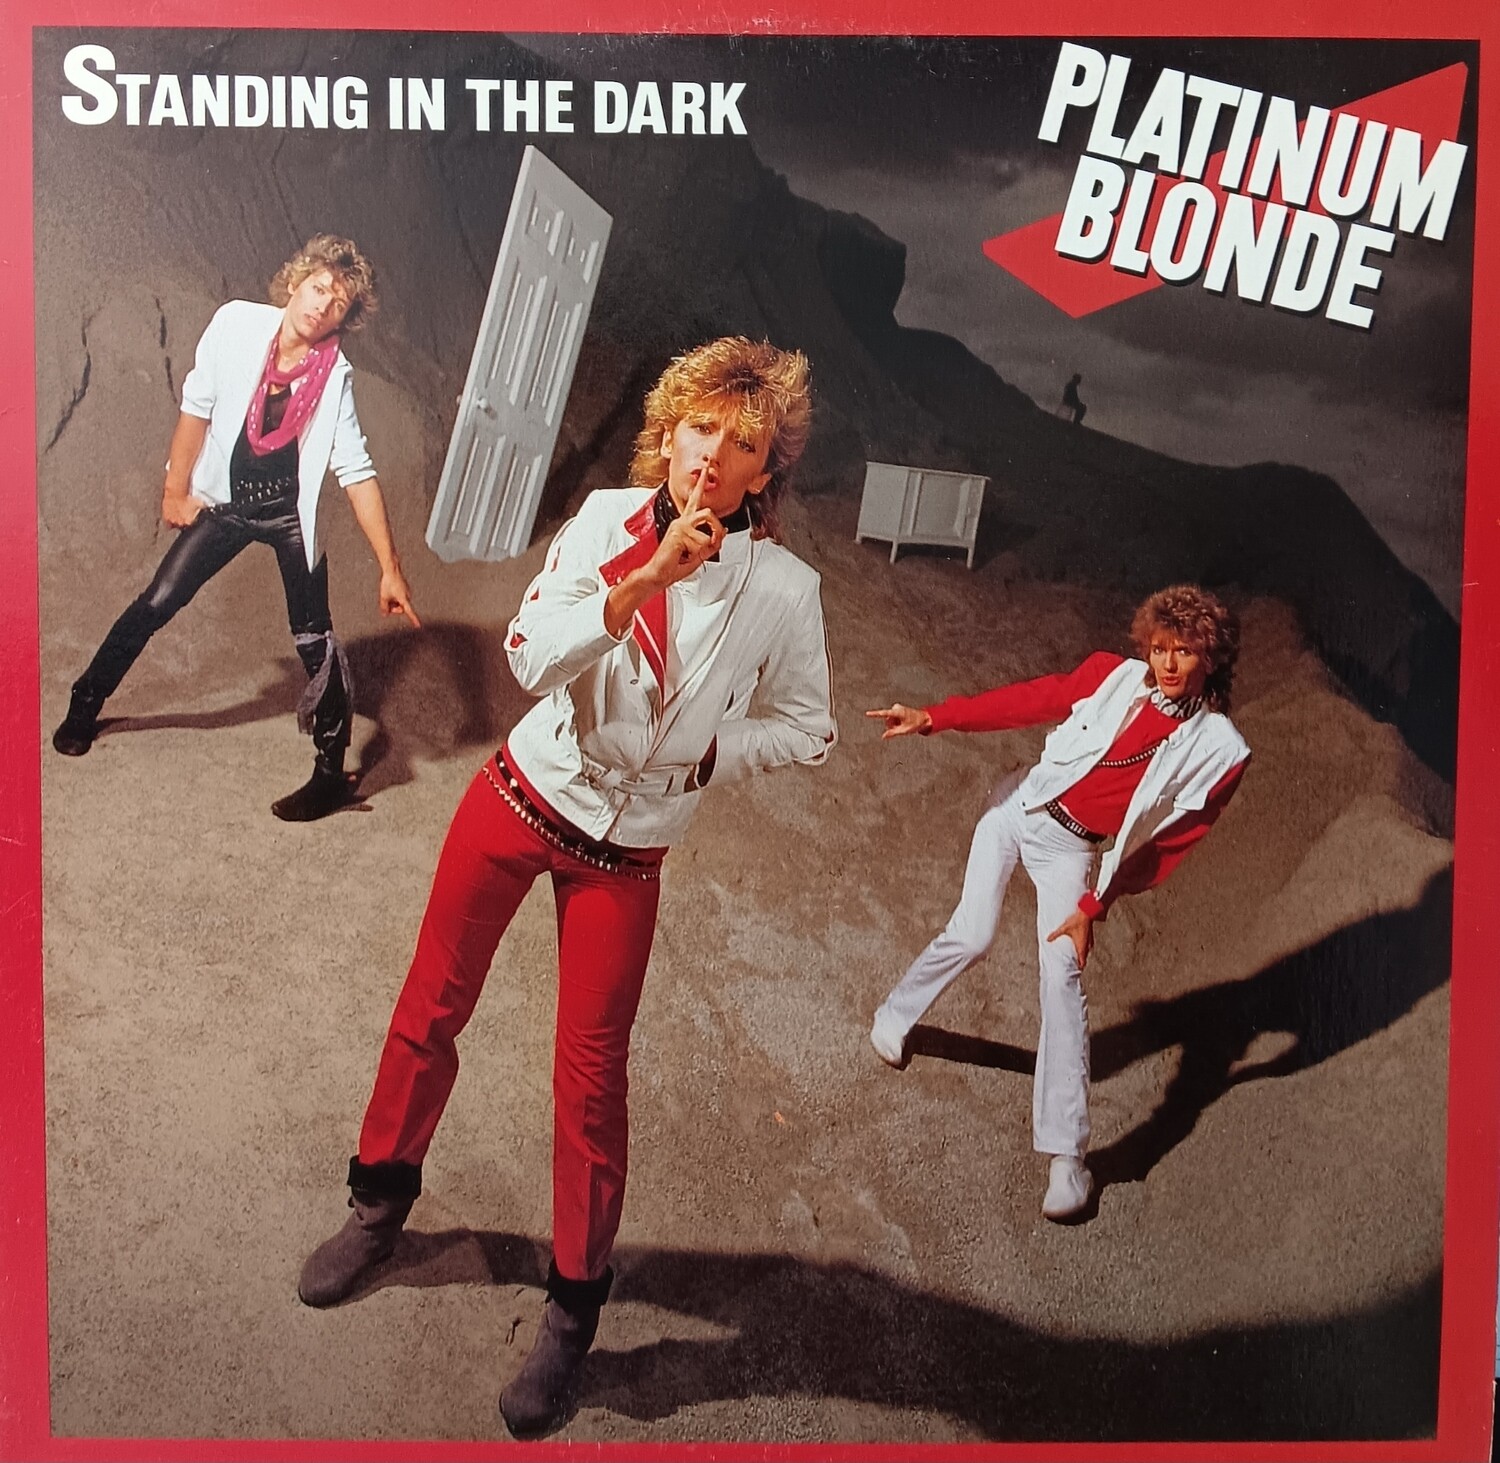 PLATINUN BLONDE - Standing in the dark